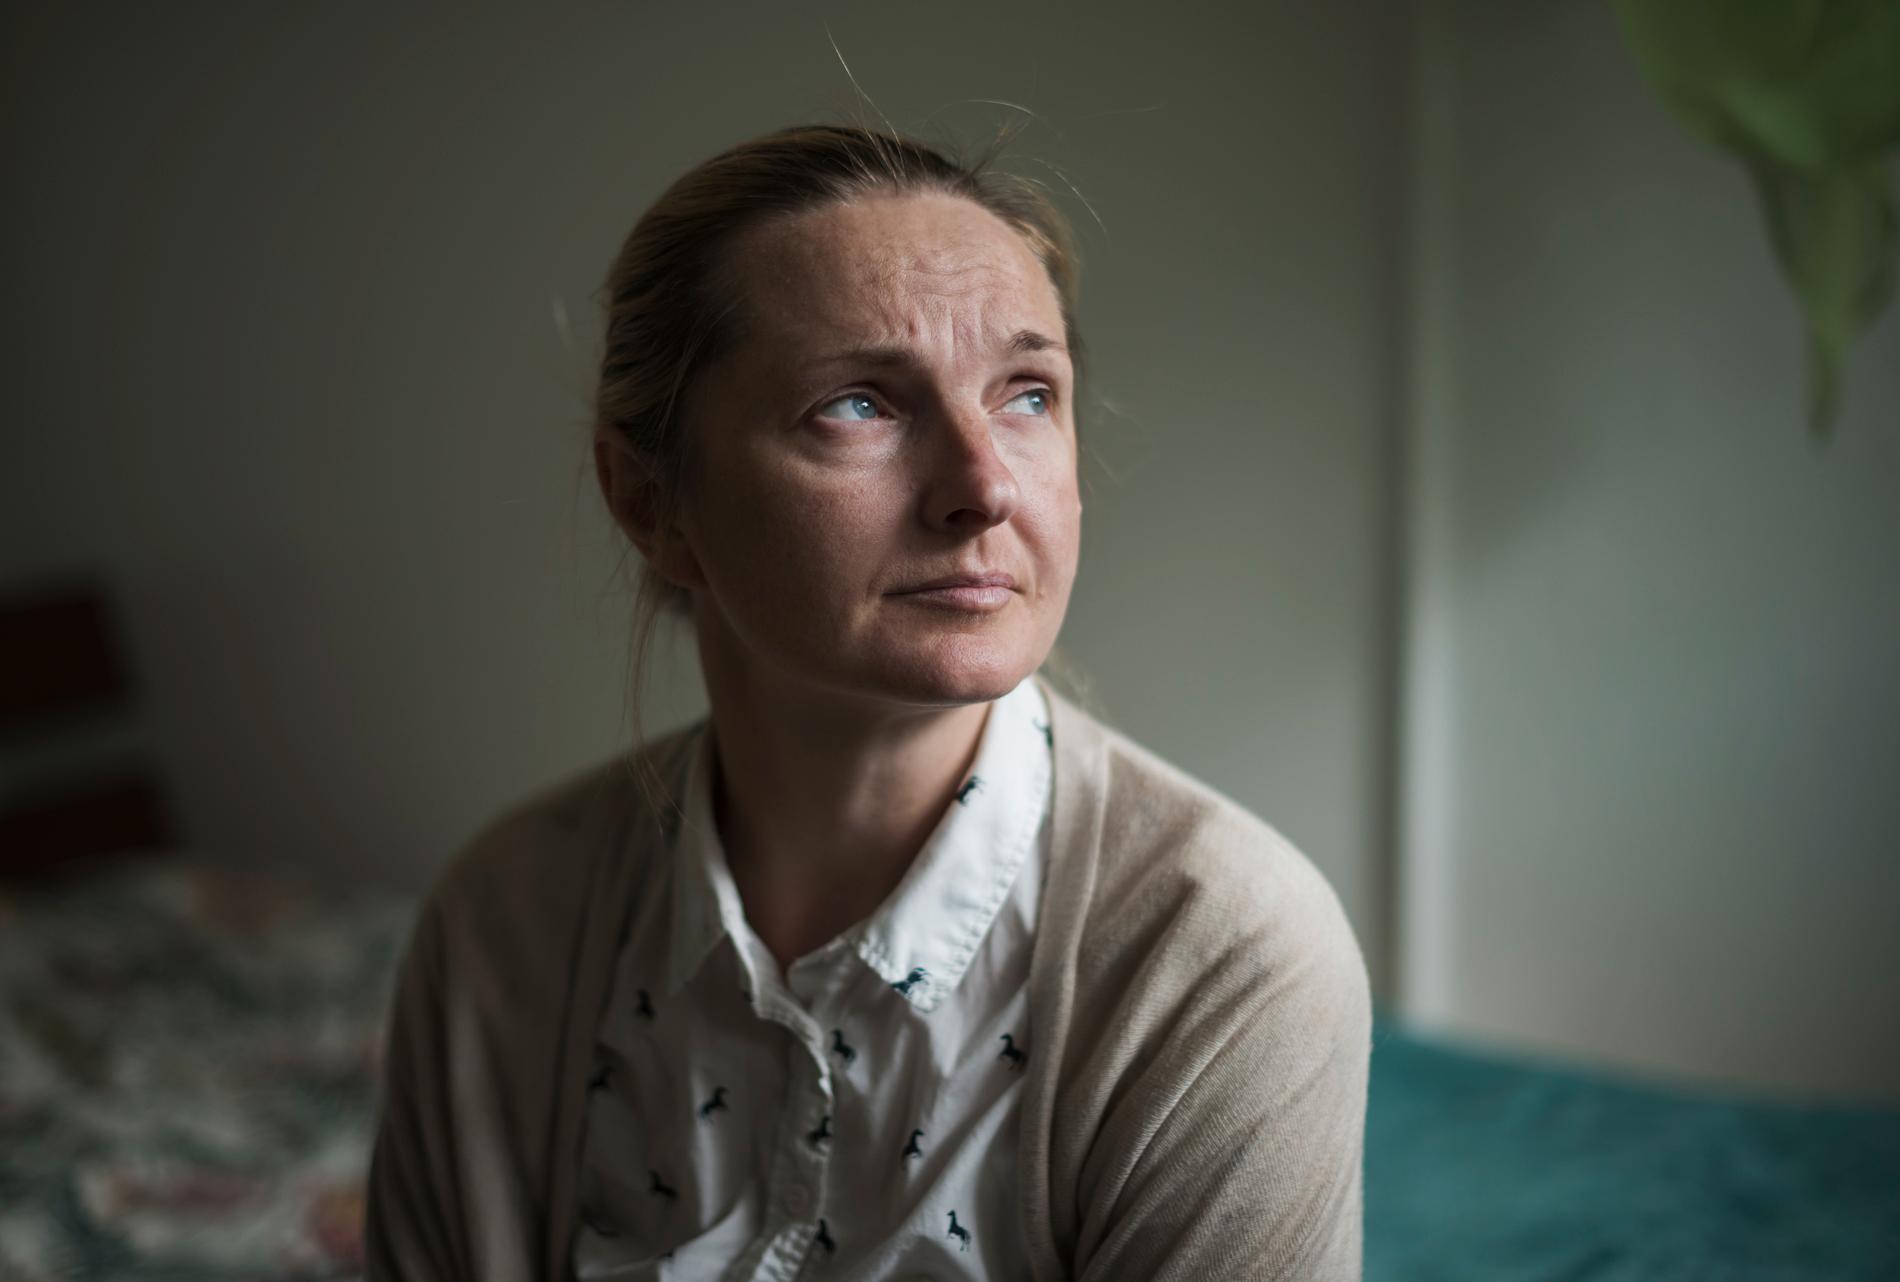 Aftonbladet träffar Iryna i hennes temporära hem söder om Stockholm, efter beskedet från Migrationsverket om att hon utvisas från Sverige. 